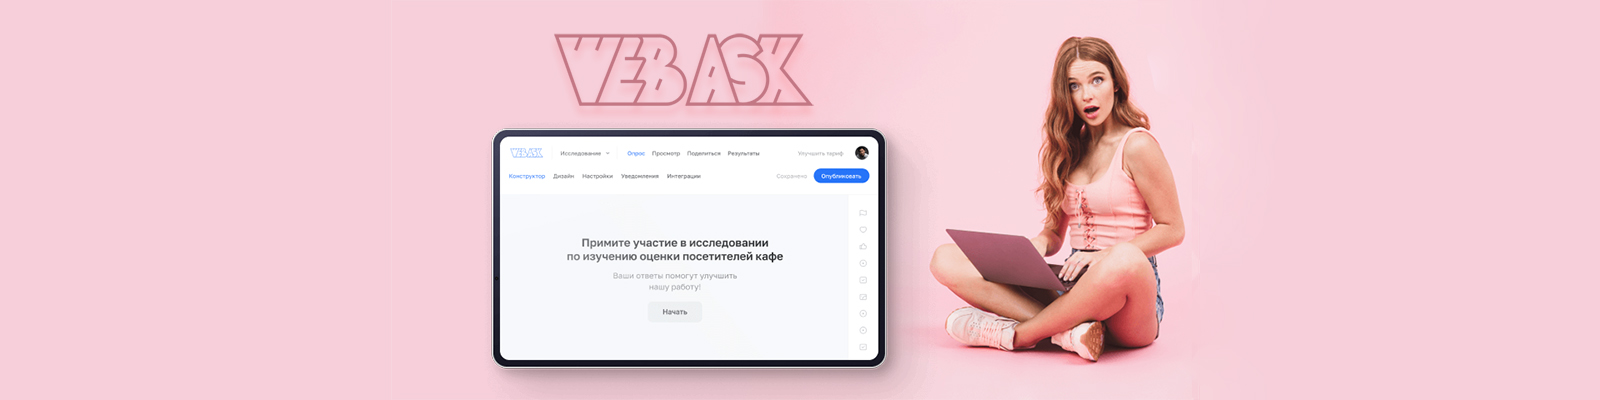 Сервис универсальных опросов от WebAsk